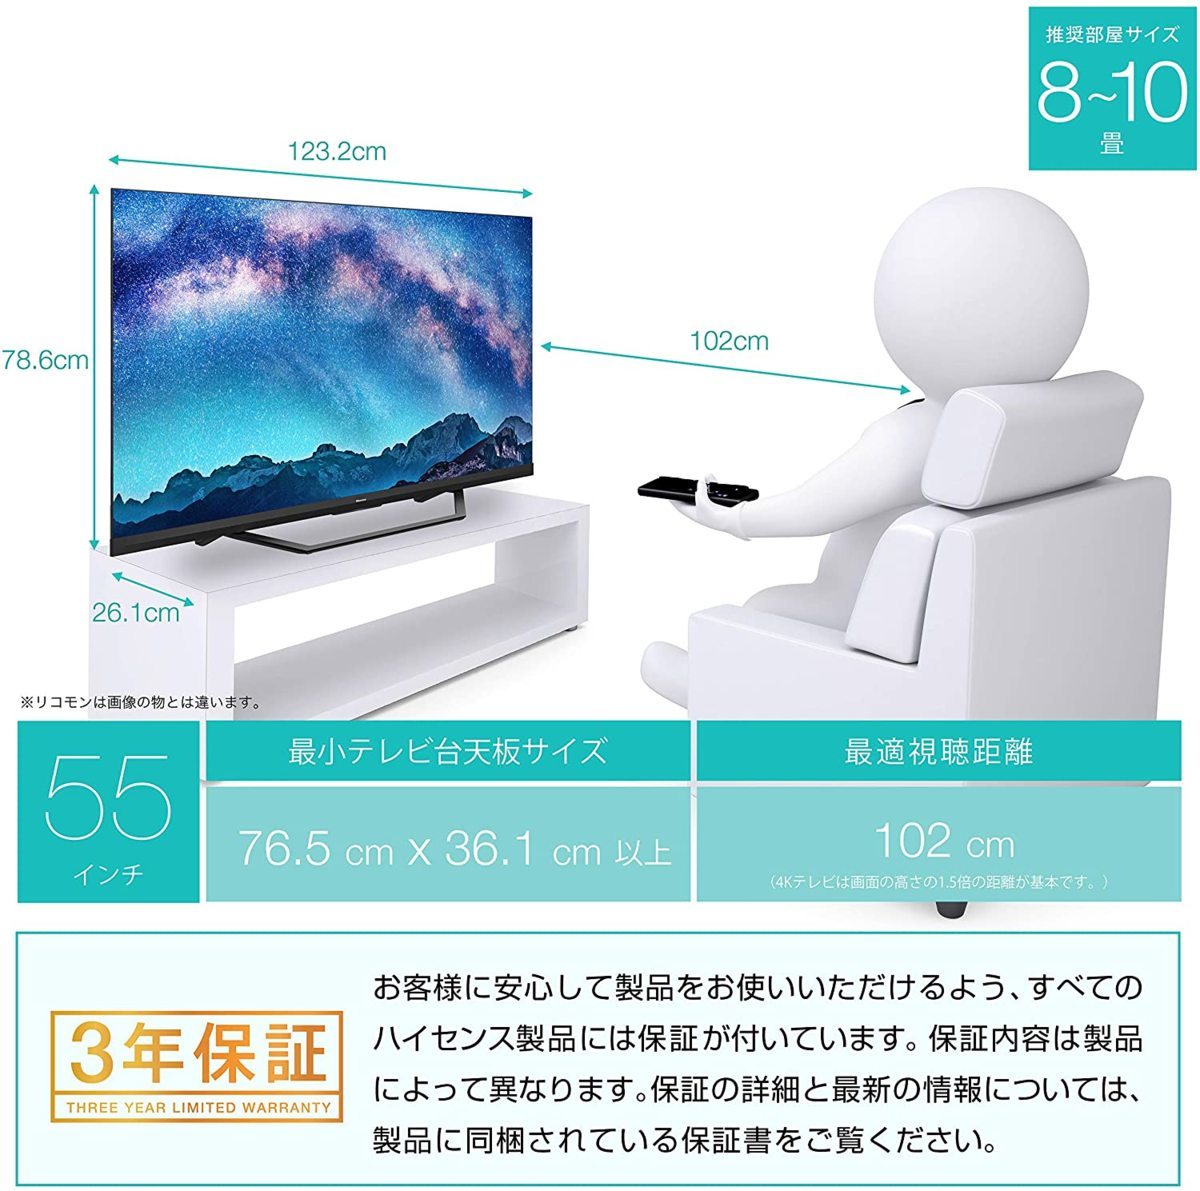 ランキング入賞商品 【即購入OK】ハイセンス 43U7FG 43インチ4kテレビ